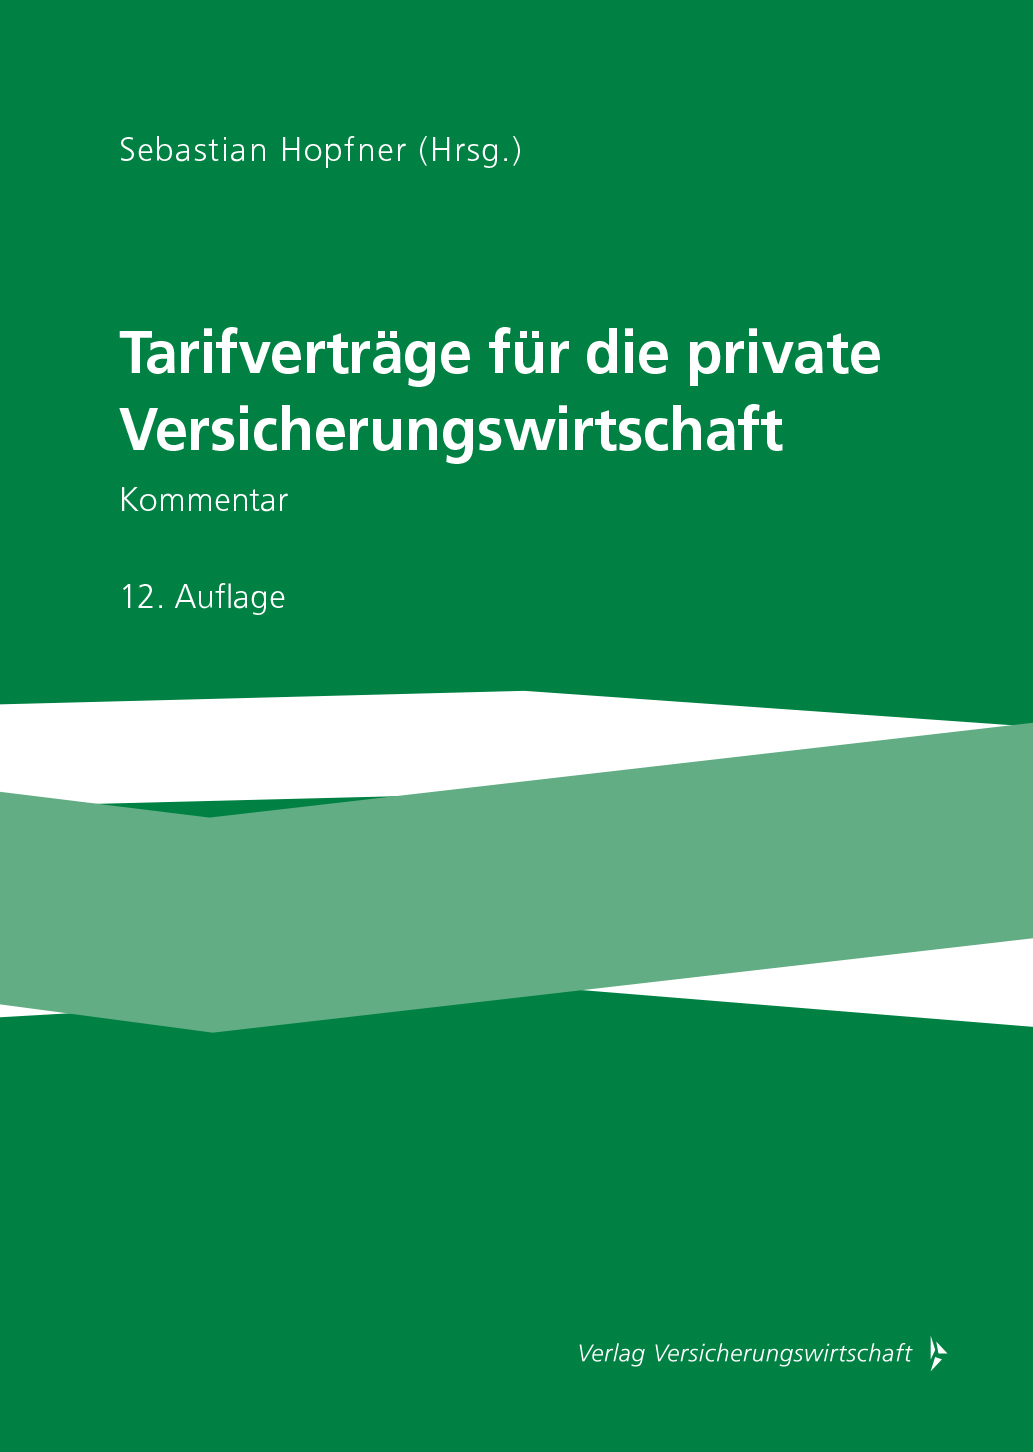 Abbildung: Tarifverträge für die private Versicherungswirtschaft